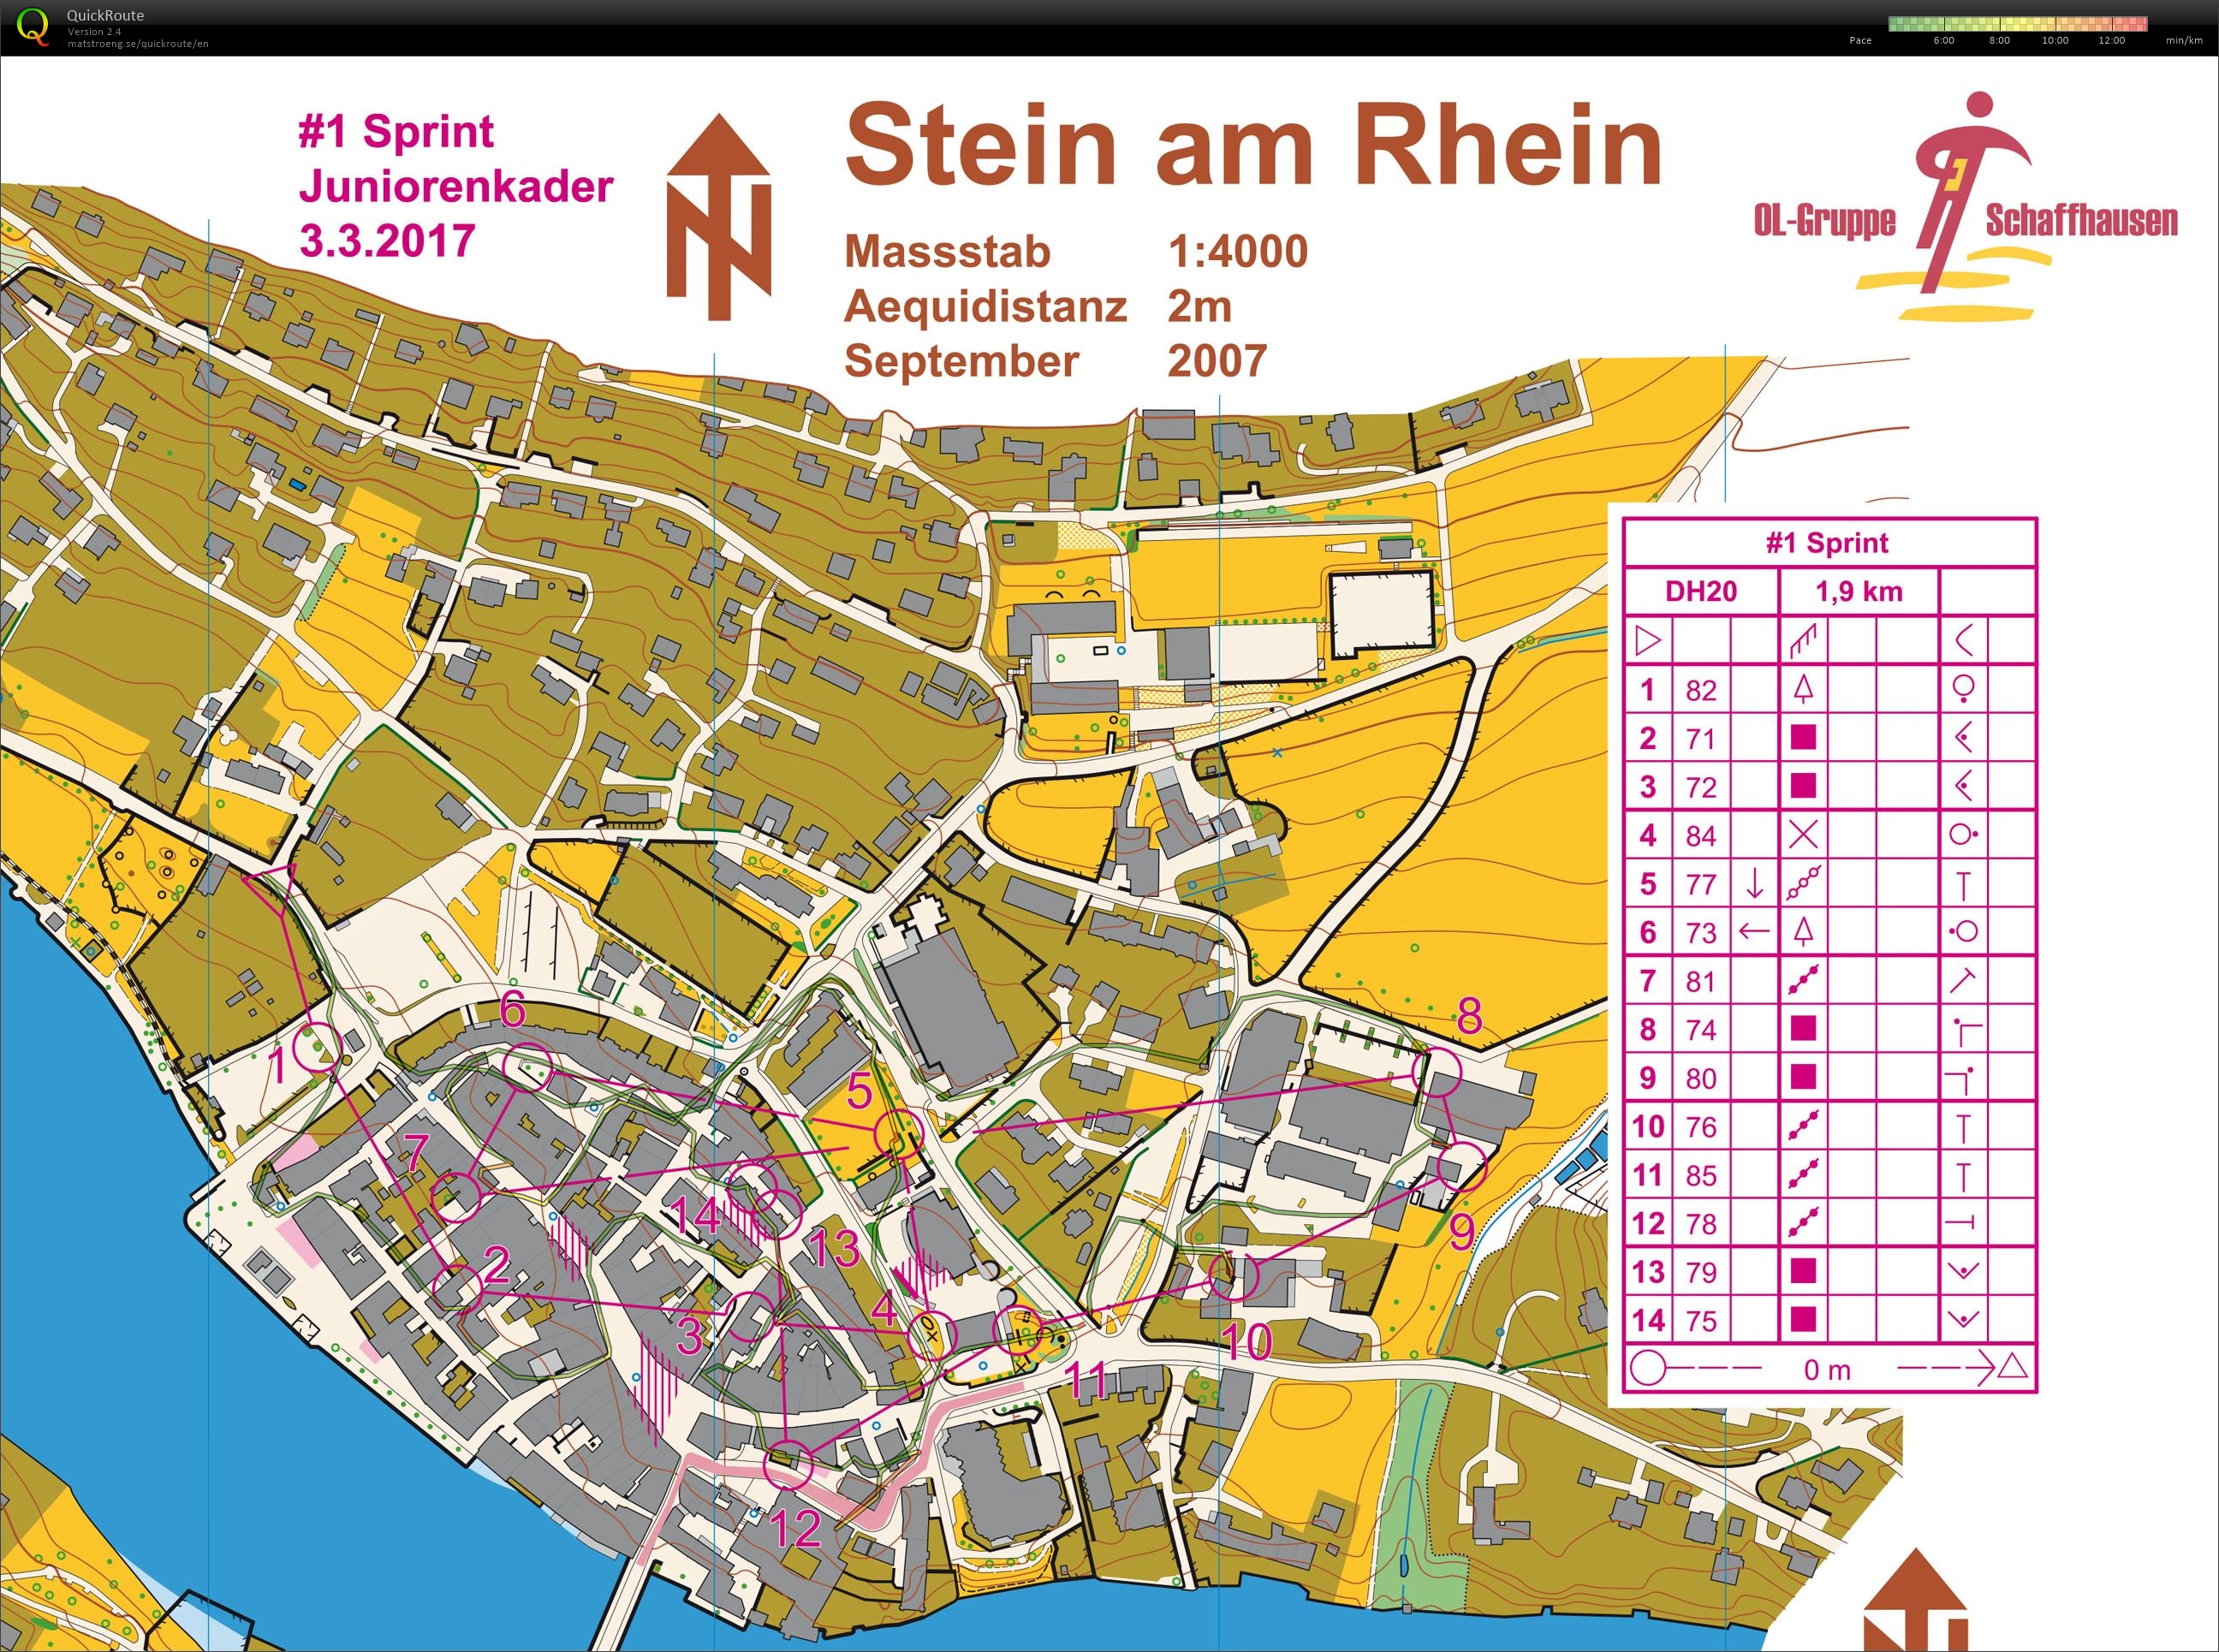 Stein am Rhein (24.07.2020)